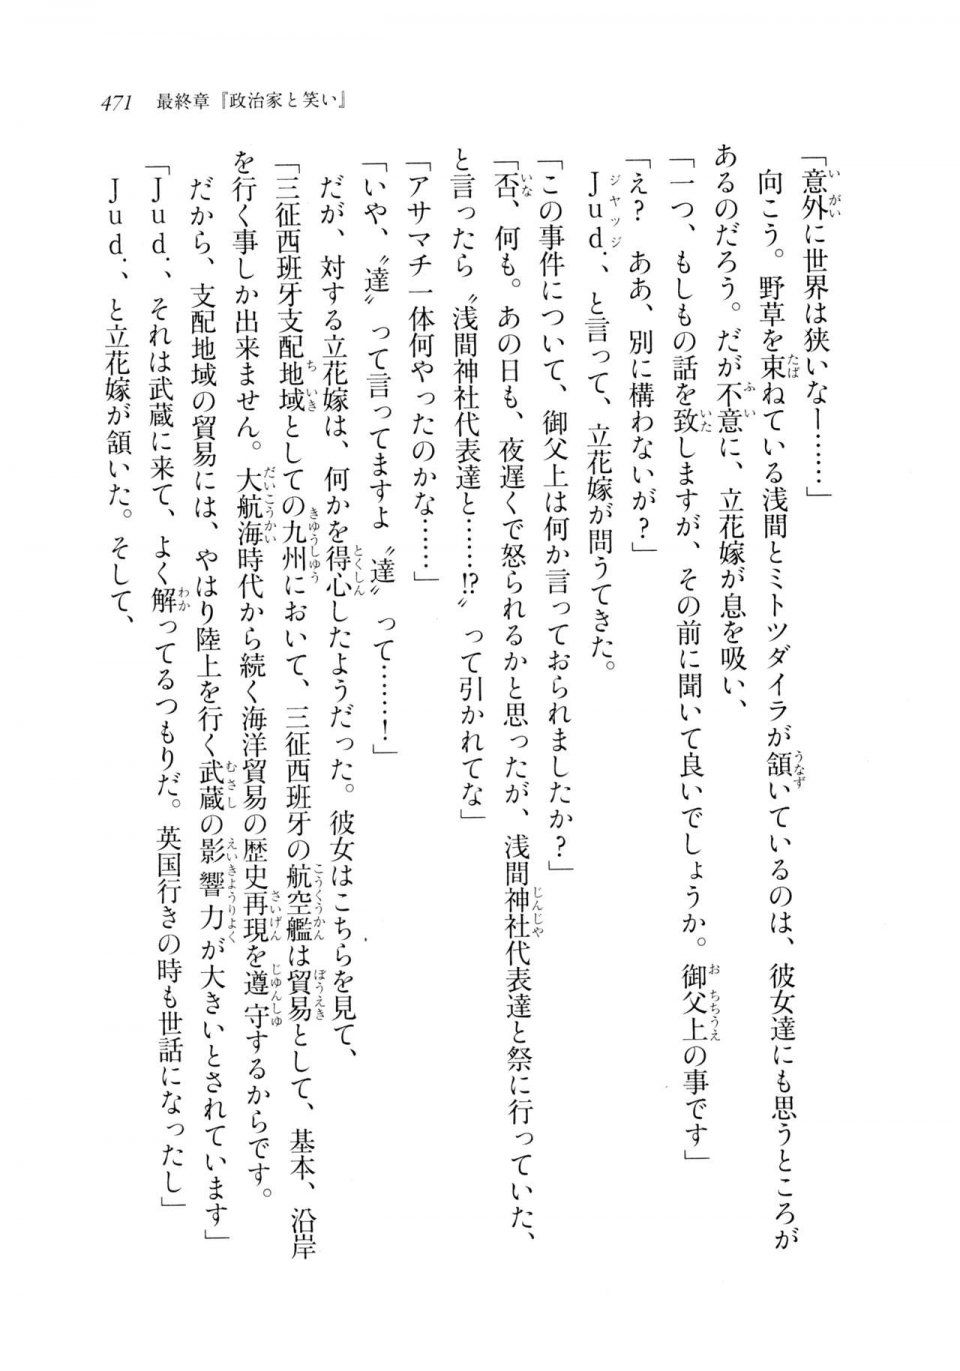 Kyoukai Senjou no Horizon LN Sidestory Vol 2 - Photo #469